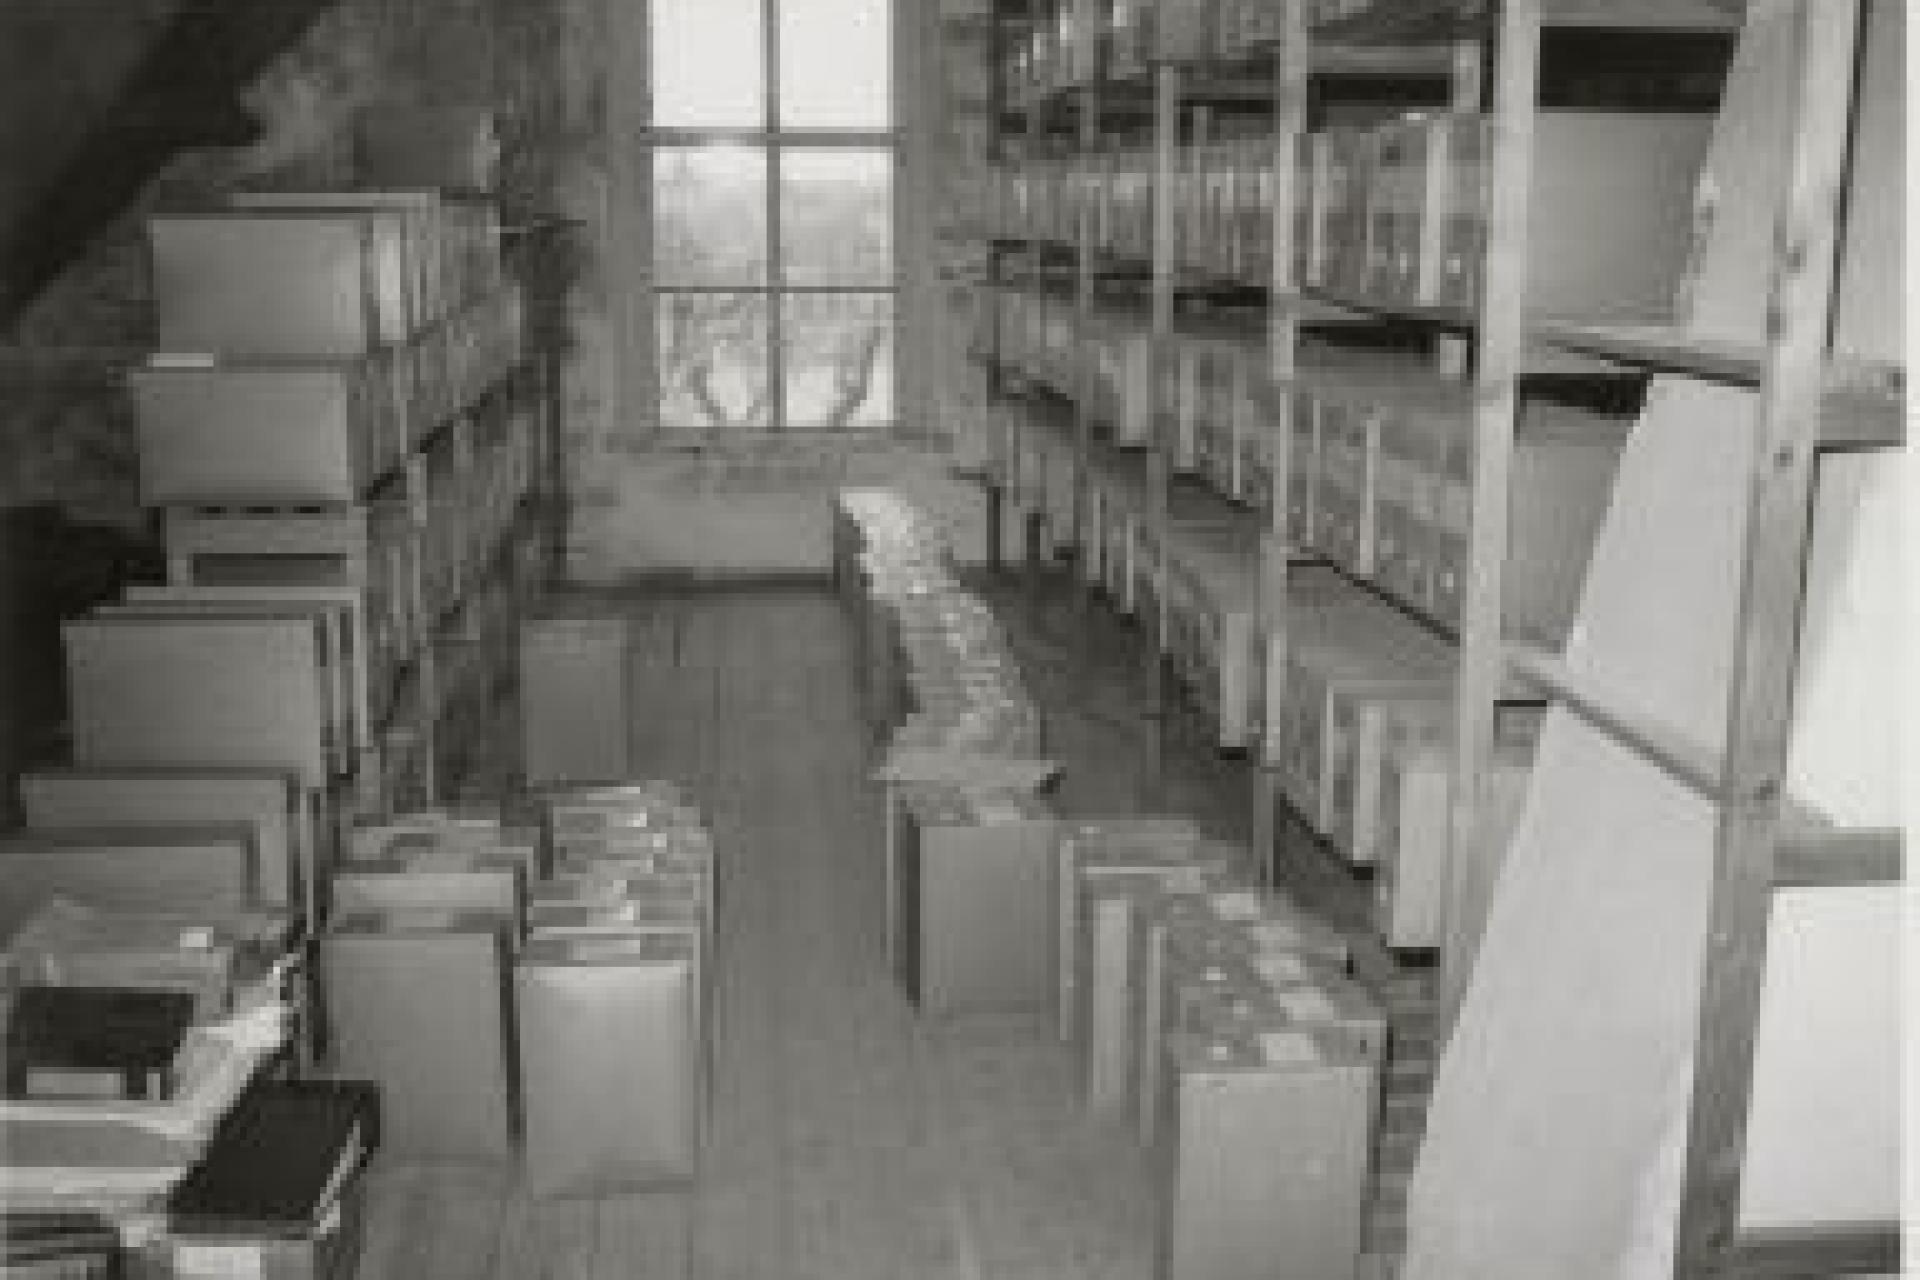 oude archief met dozen en stellingkasten